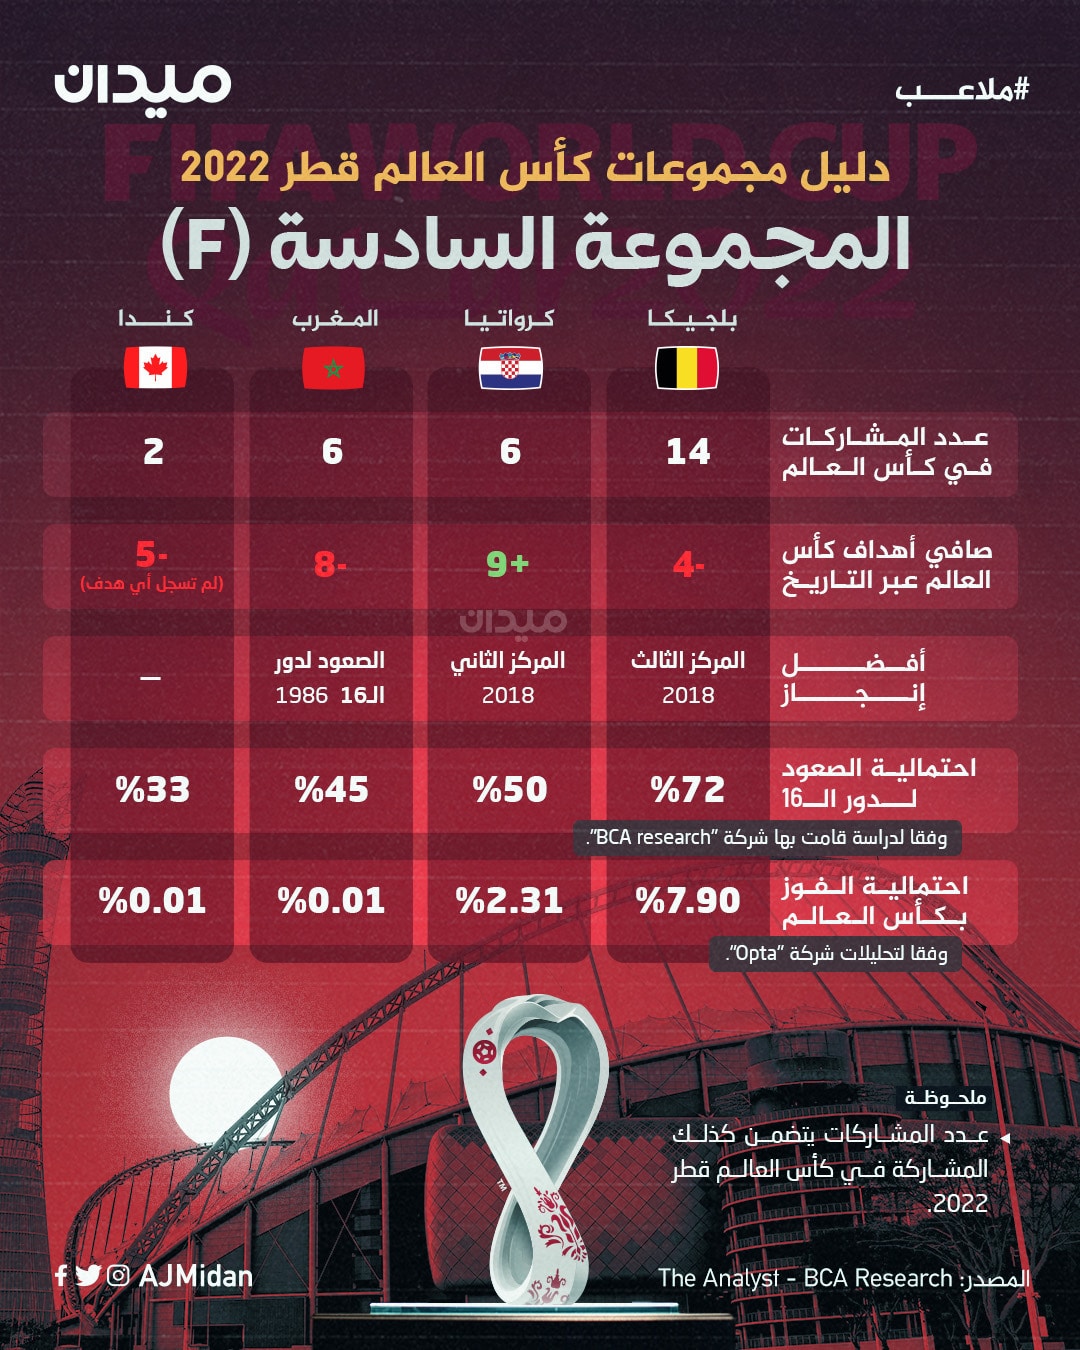 إحصائيات منتخبات المجموعة السادسة في كأس العالم